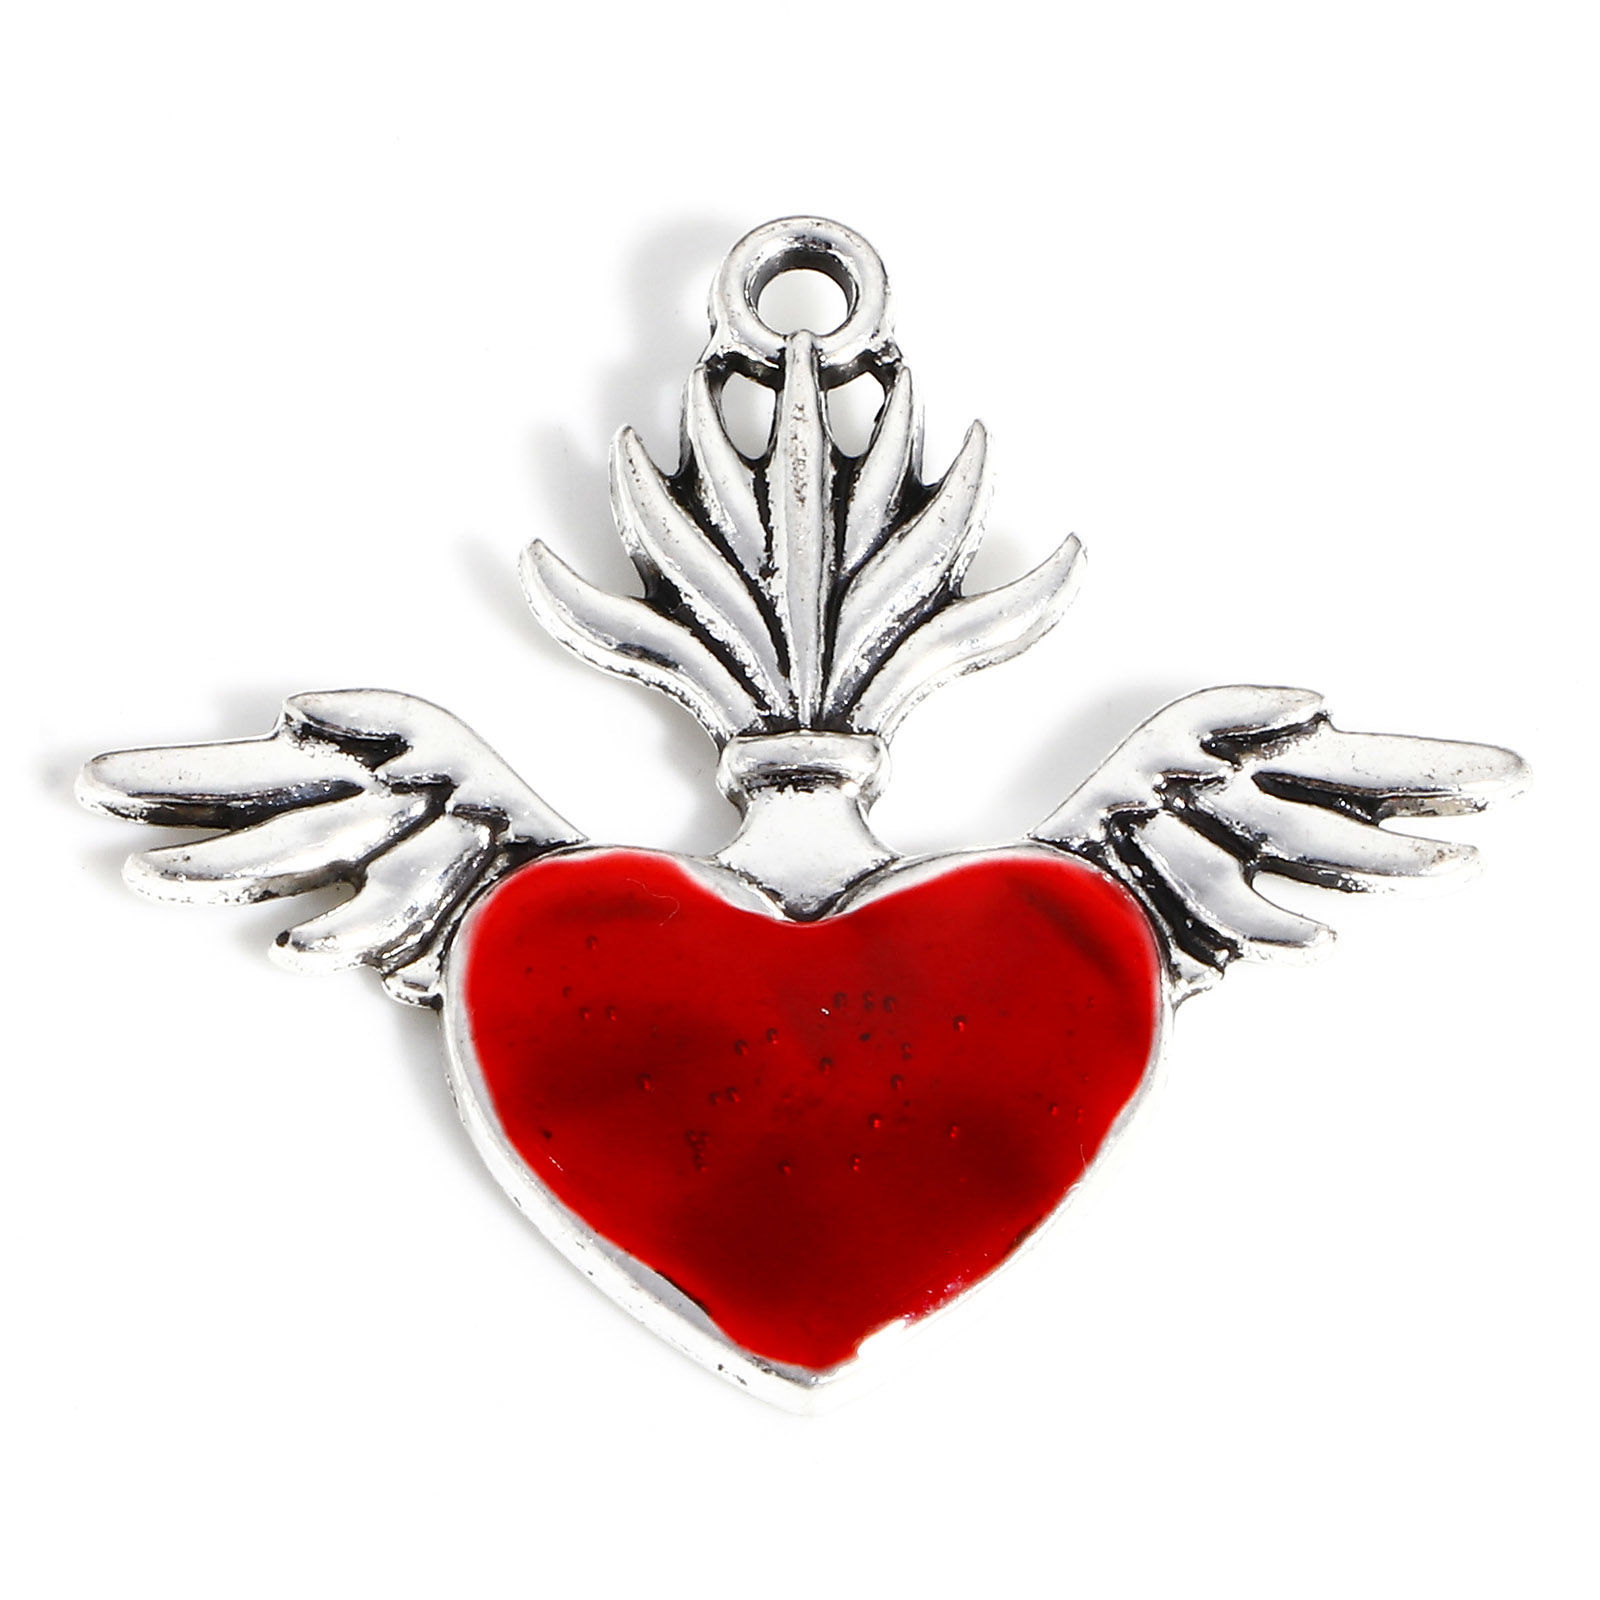 Picture of Zinc Based Alloy Religious Pendants Antique Silver Color Red Ex Voto Heart Wing Enamel 3.4cm x 3.1cm, 5 PCs